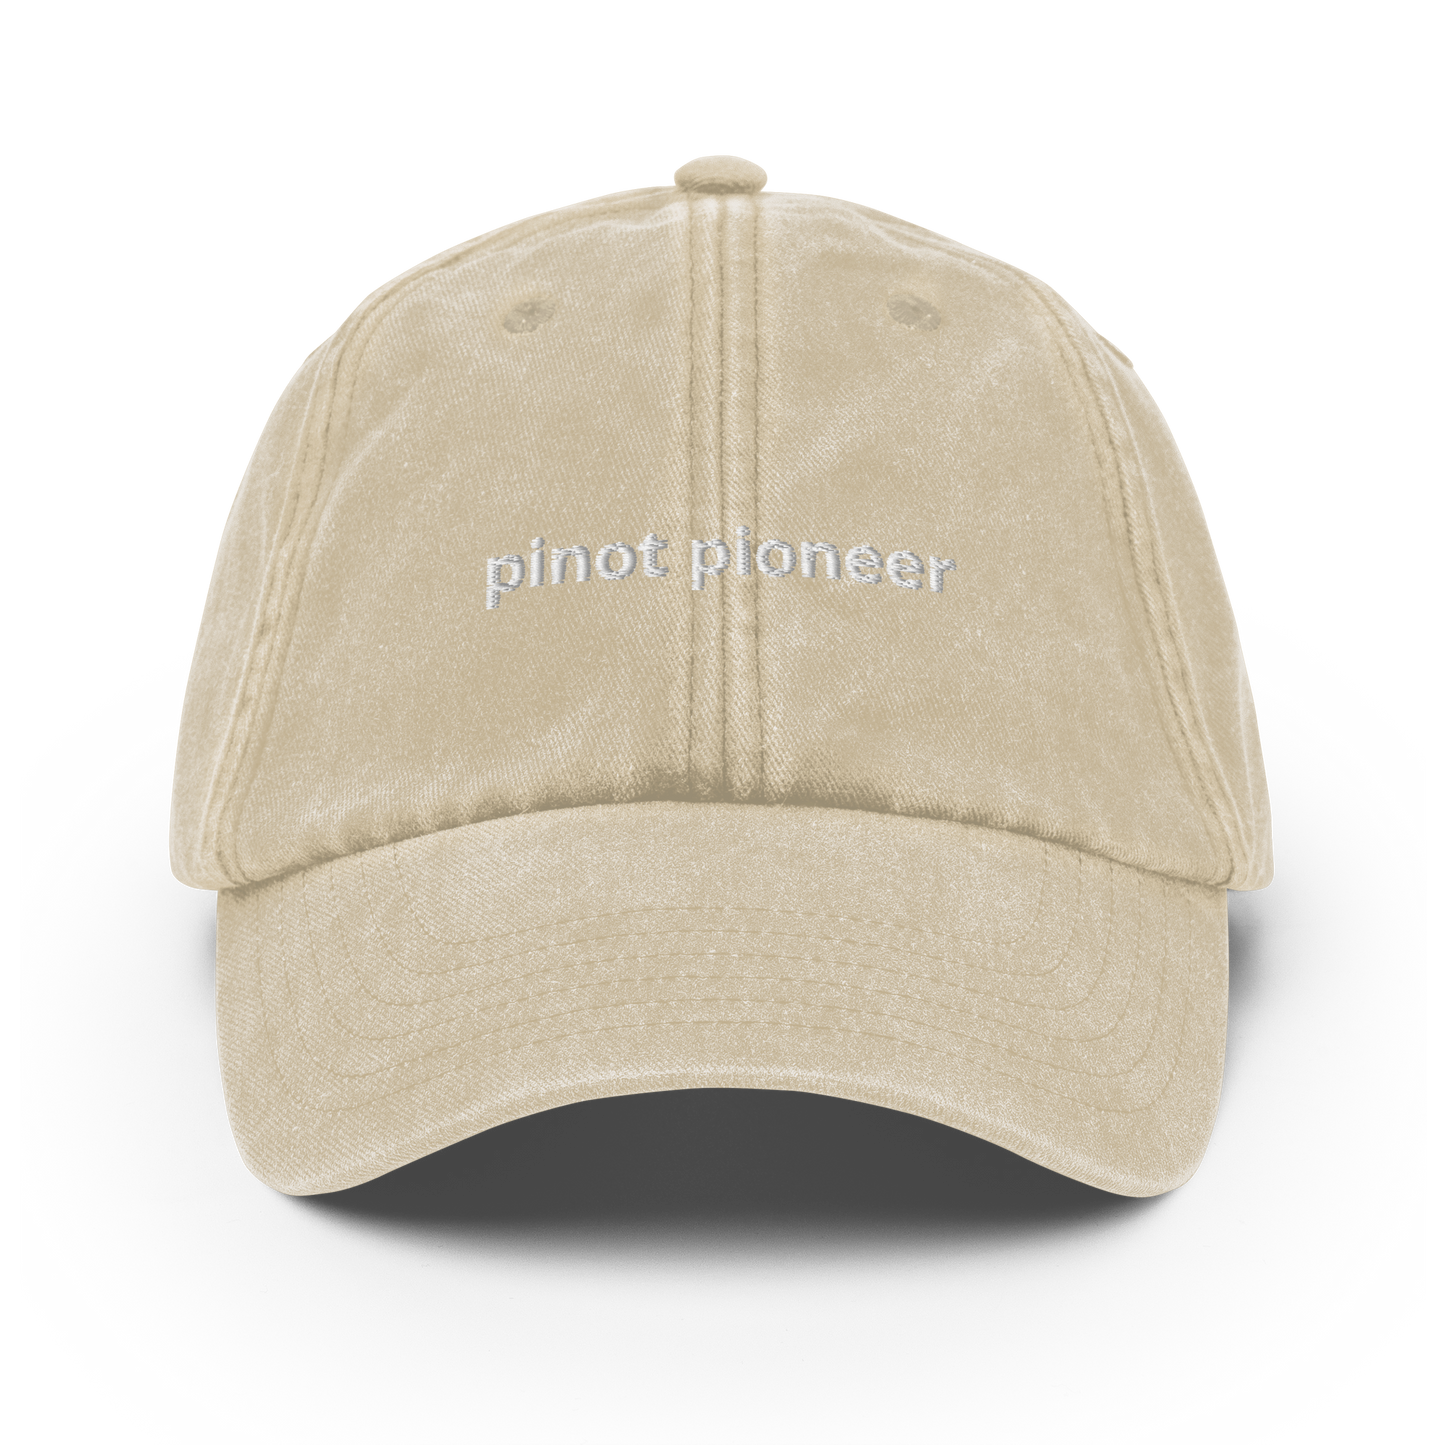 Pinot Pioneer - Vintage Hat